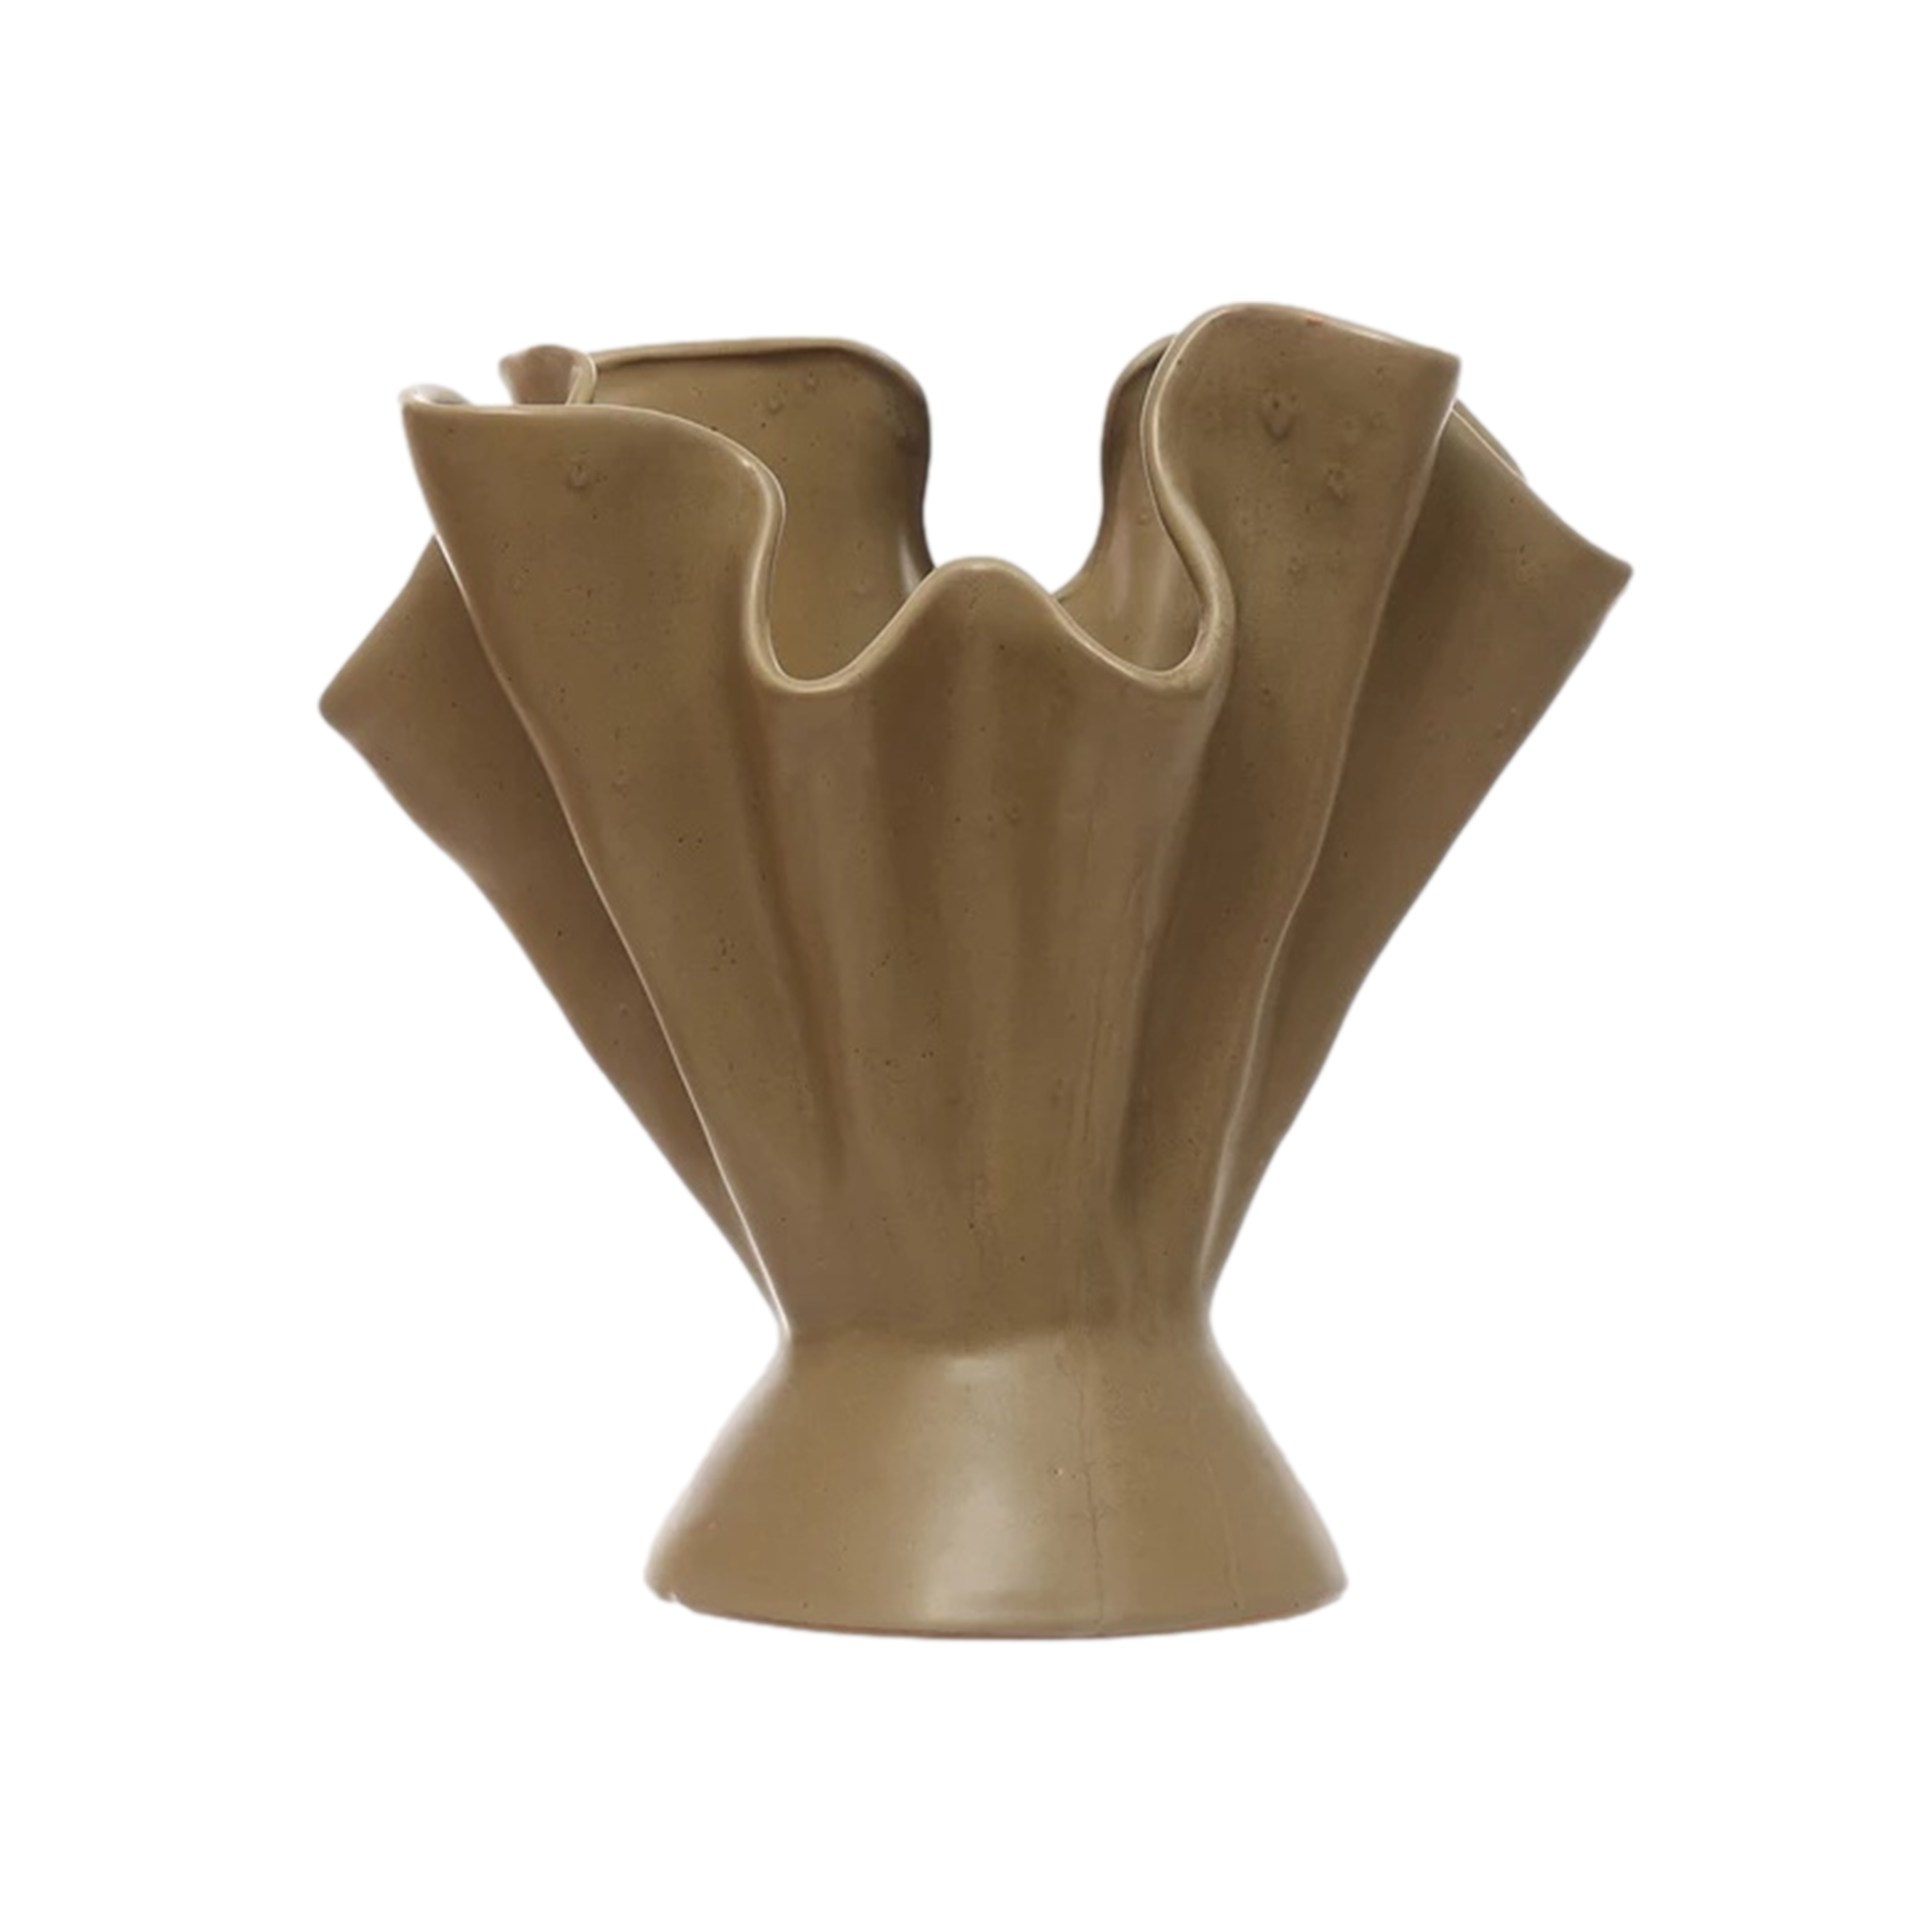 Ruffled Sage Vase